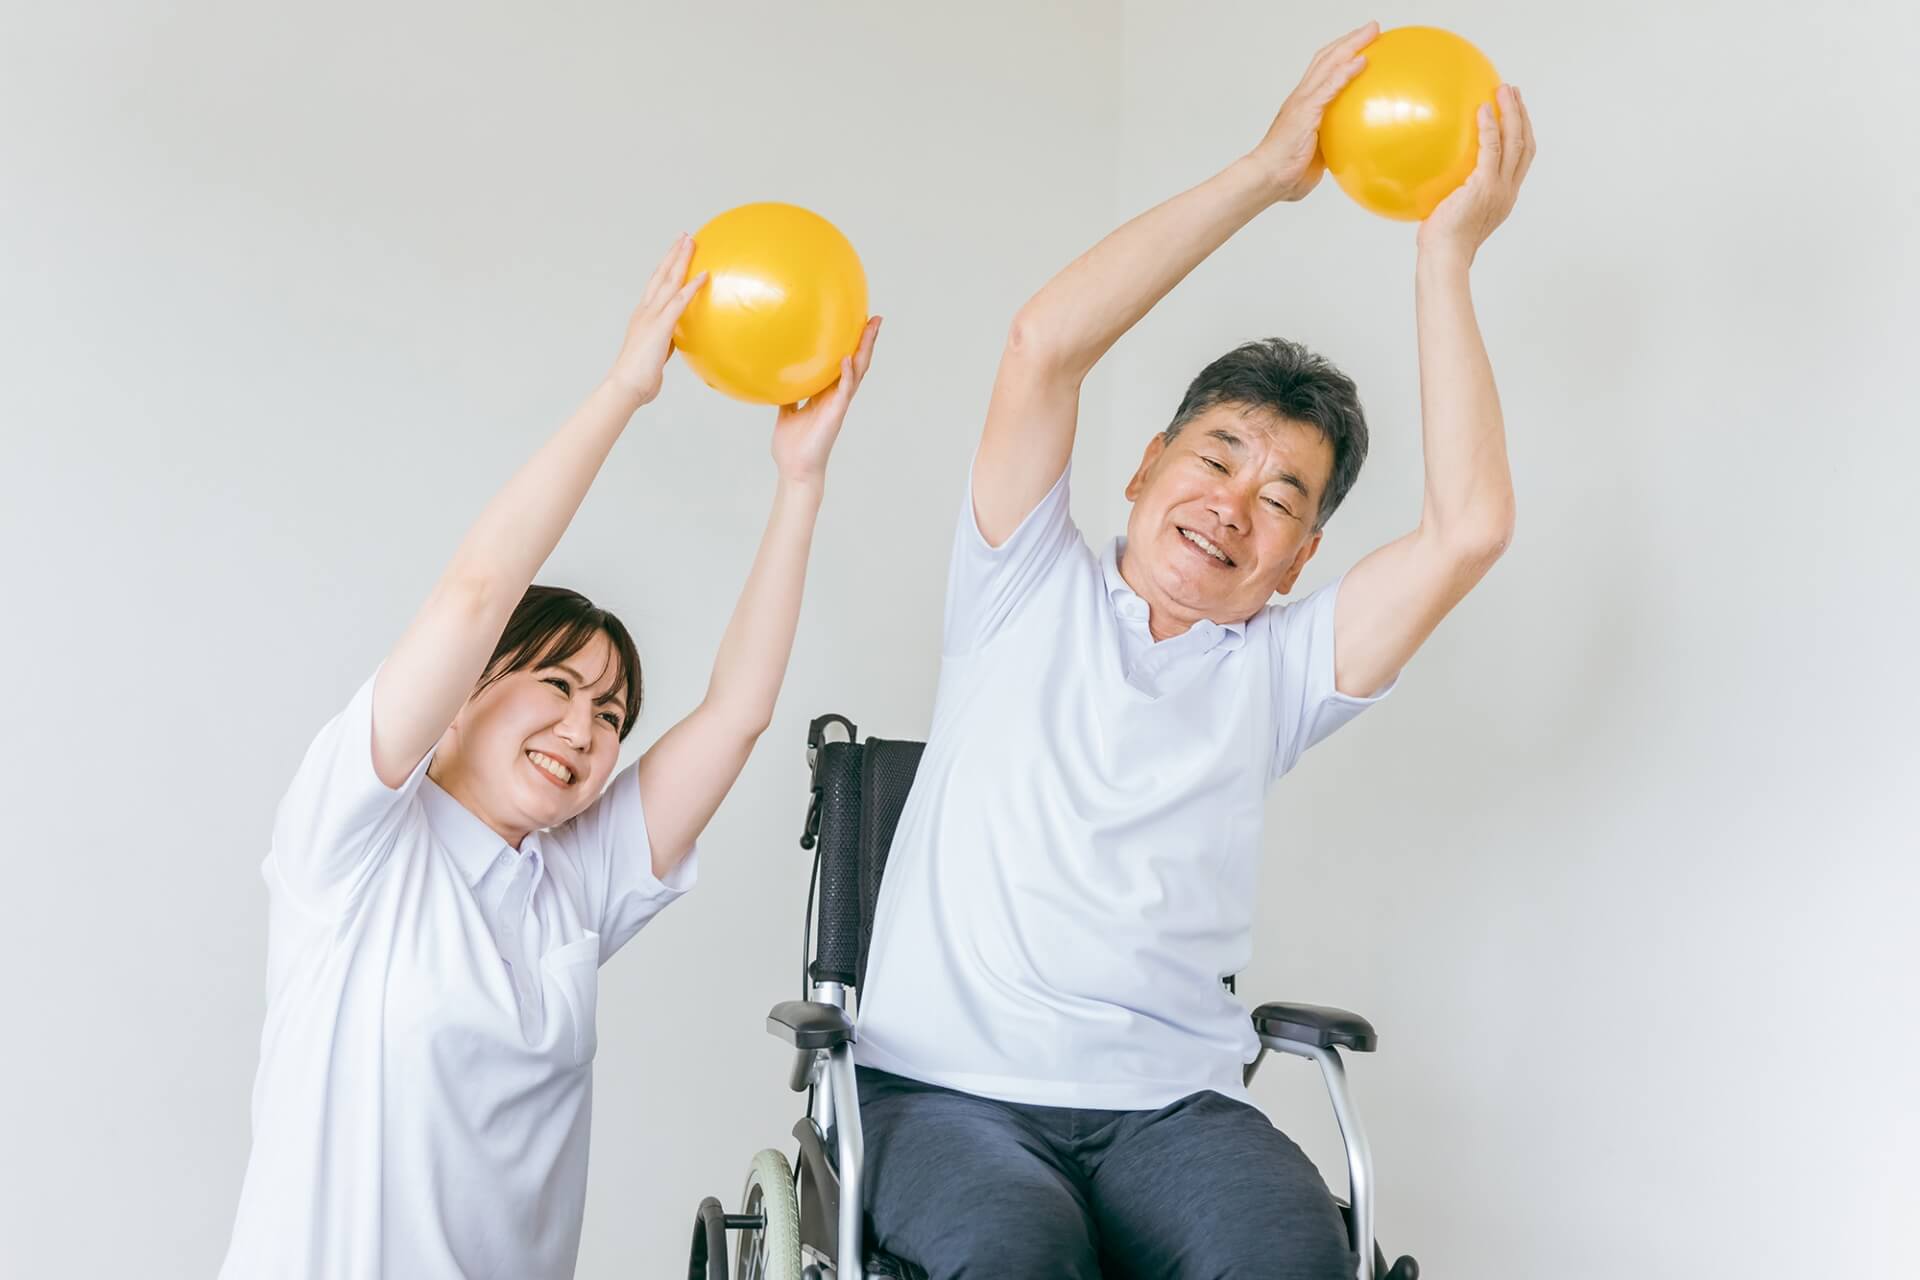 女性介護スタッフと、車椅子に乗ったご高齢の男性が、それぞれ両手で持ったボールを高く上げて運動している様子の写真